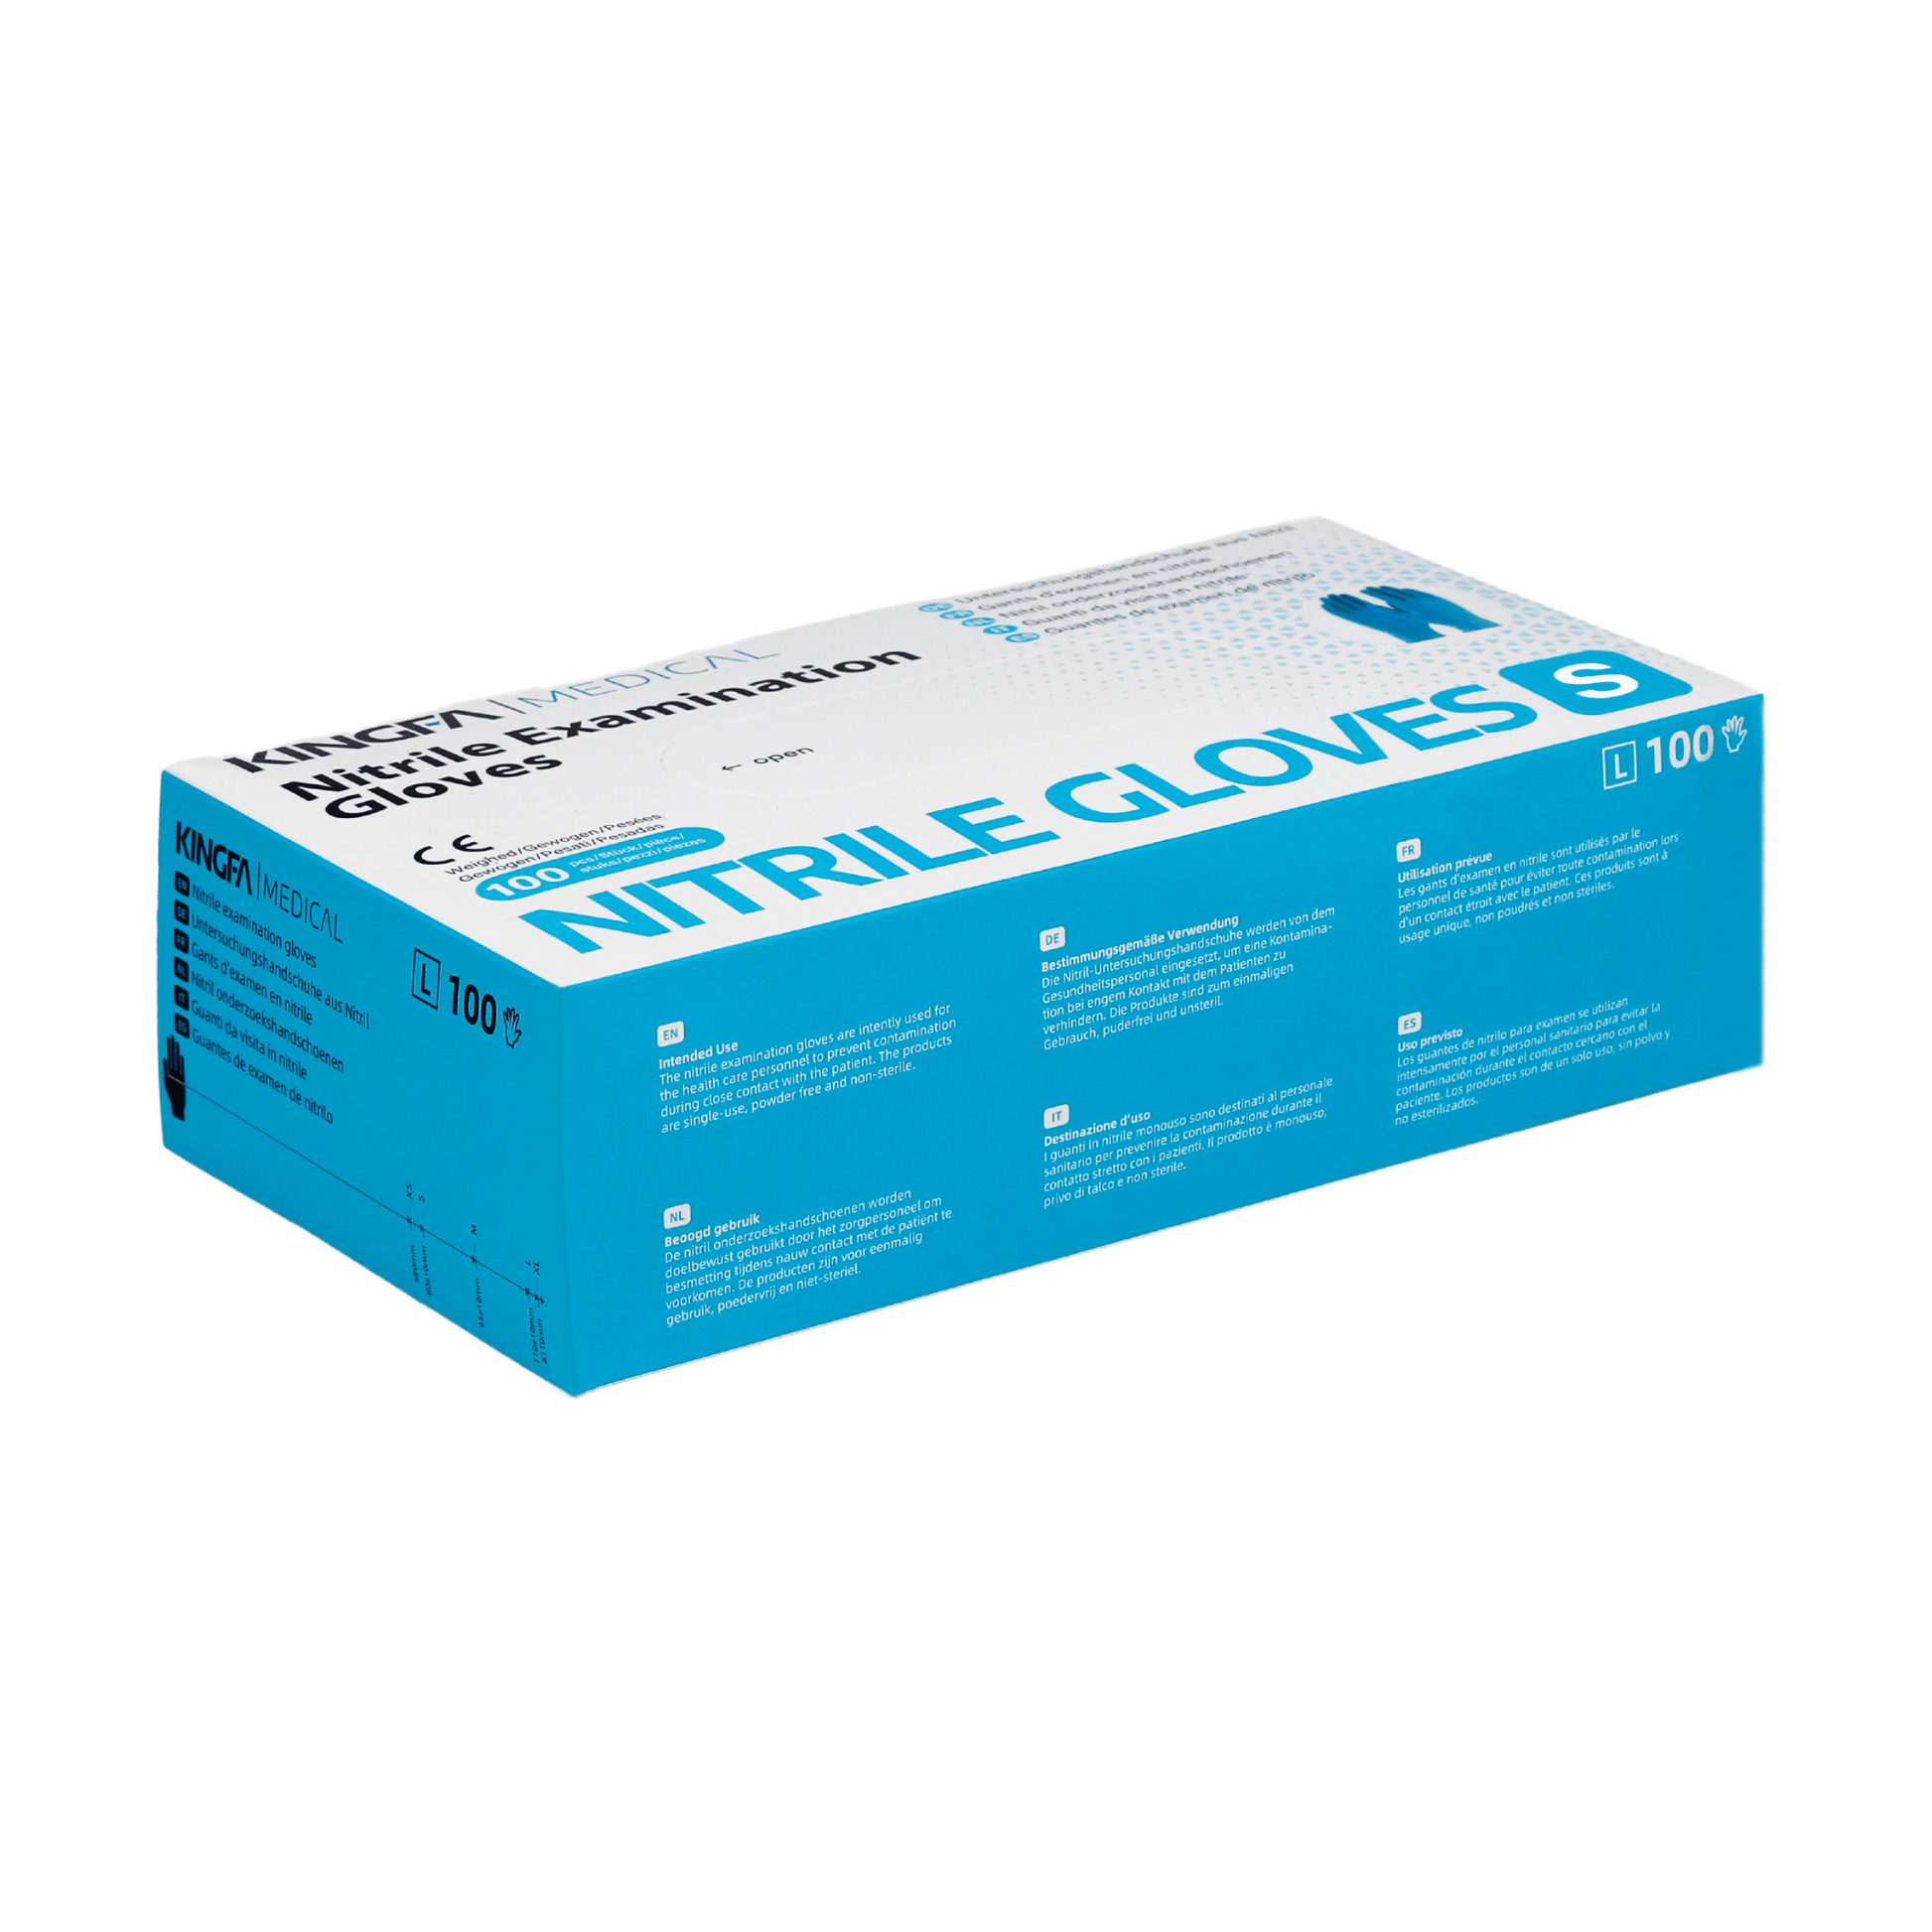 Schachtel mit Altruan™ lila Nitrilhandschuhen in Größe XL, bestehend aus 100 % Nitril, puderfreien und latexfreien Untersuchungshandschuhen. Auf der Verpackung wird darauf hingewiesen, dass sie nicht aus